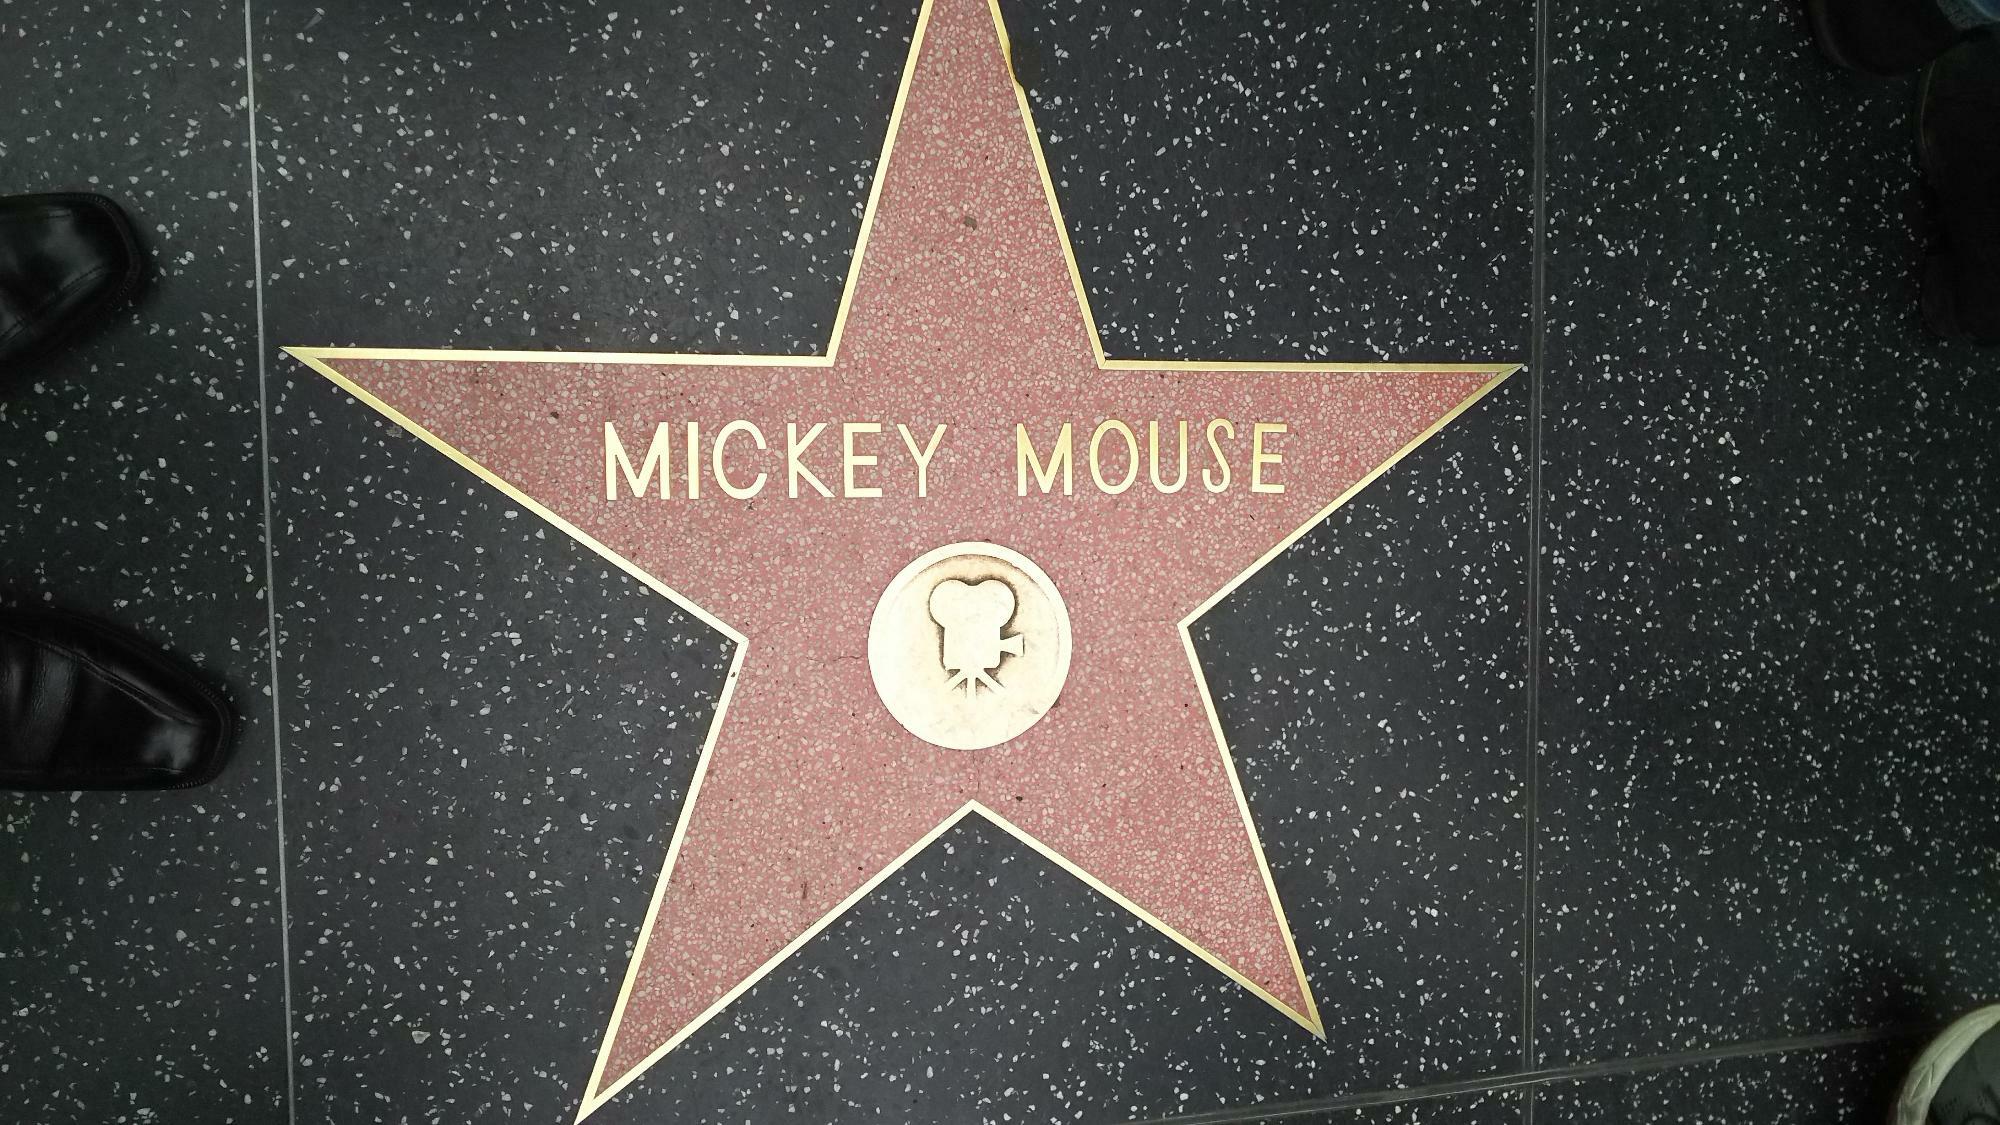 米国ロサンゼルス・ハリウッド内の「ハリウッド・ウォーク・オブ・フェーム」では、映画界で活躍したたくさんのスター達の名前が刻まれている。その中にはゴジラやミッキーマウス等のキャラクター達の名前も・・・。